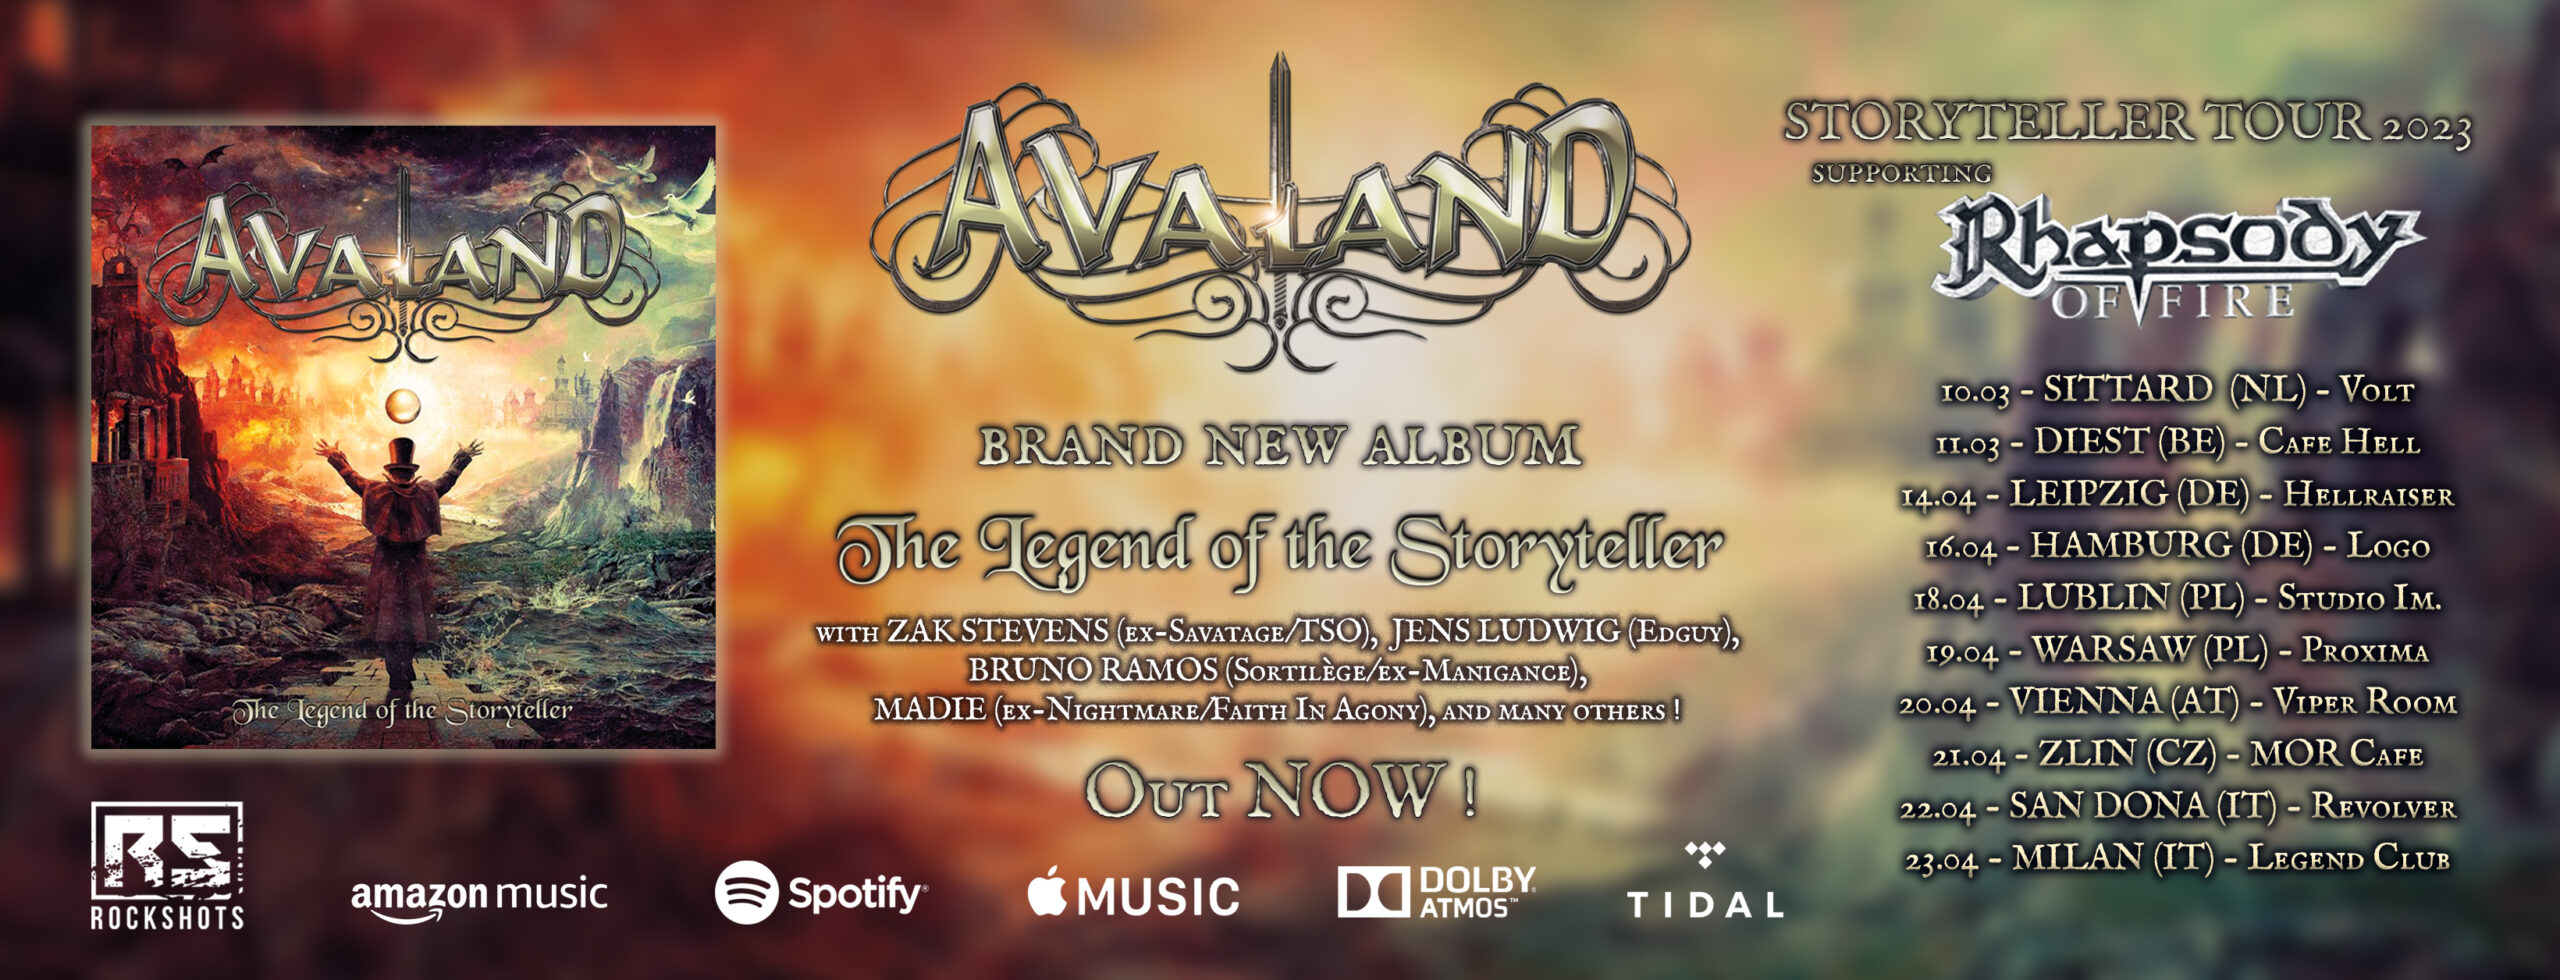 Avaland band